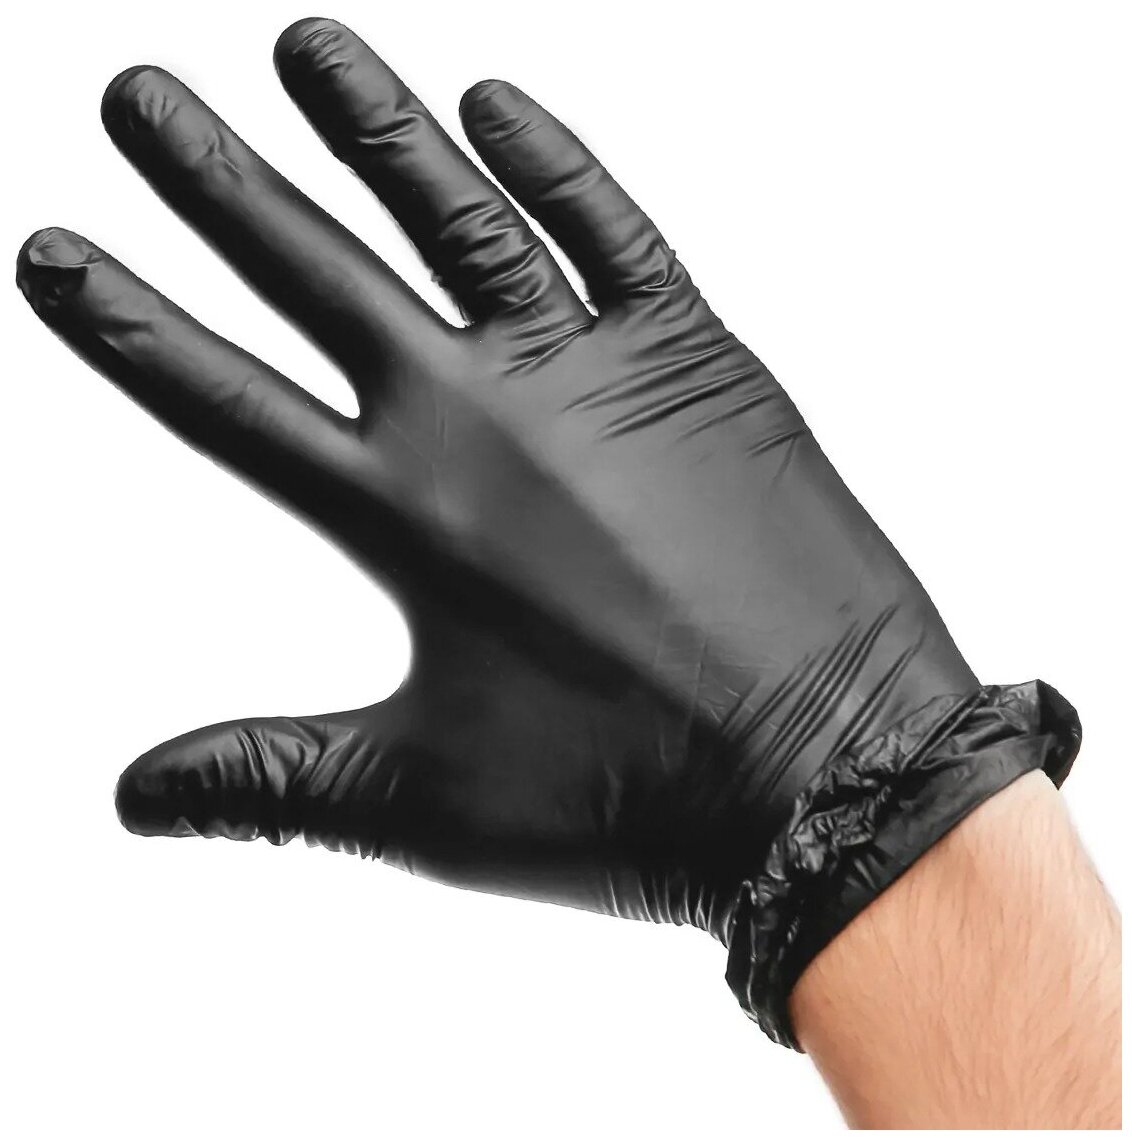 Перчатки нитриловые Top Glove хозяйственные, одноразовые, медицинские S, M, L, XL черные, защитные